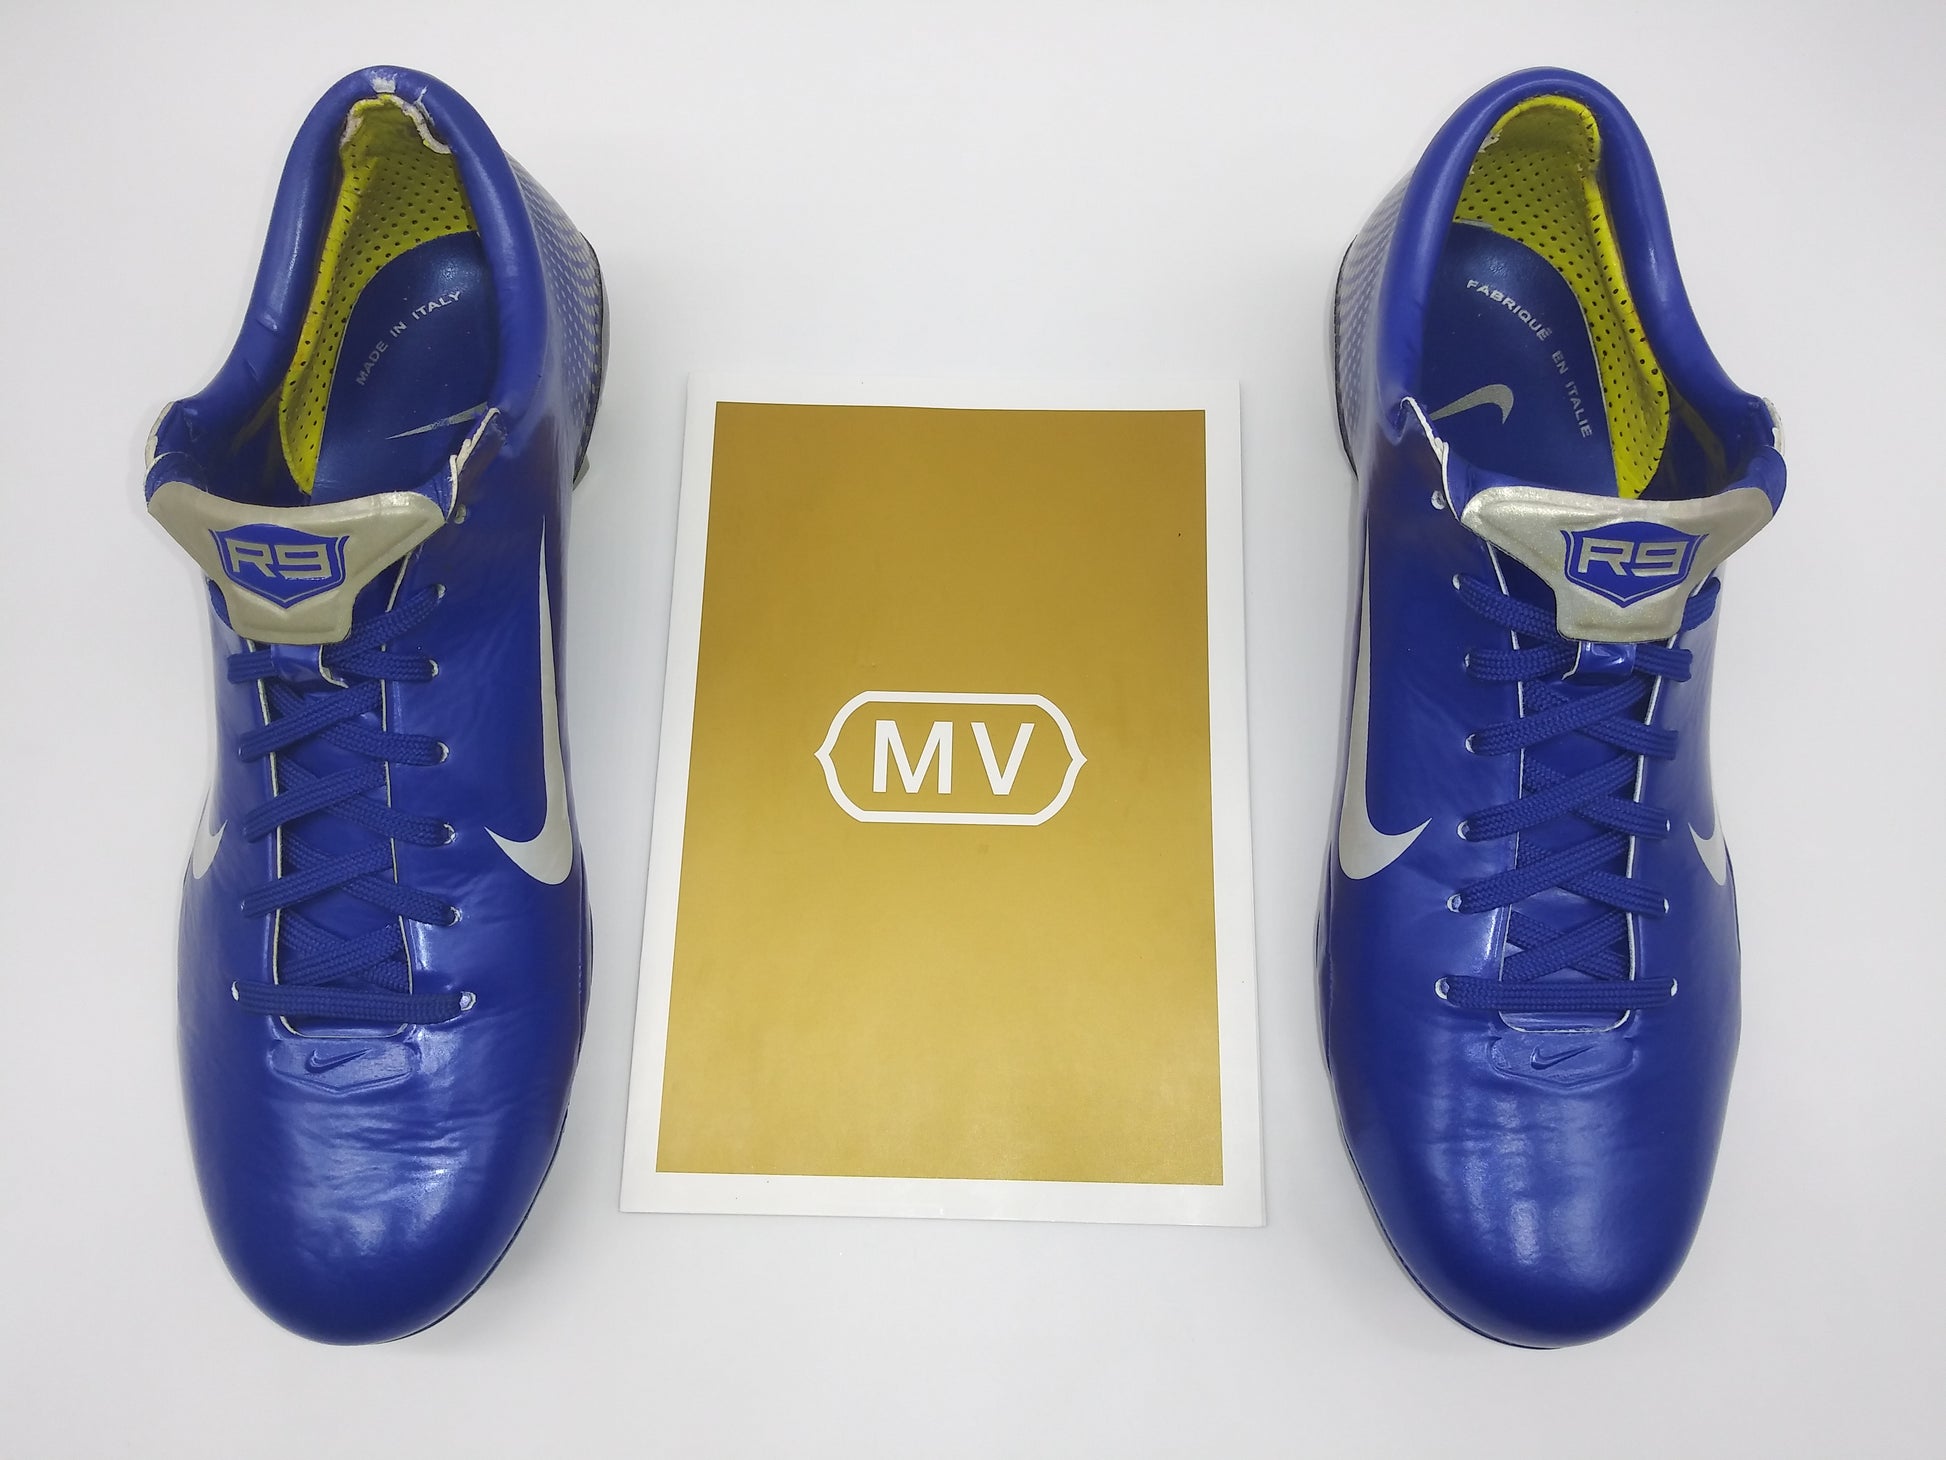 Nike Mercurial Vapor III R9 Blue Footwear